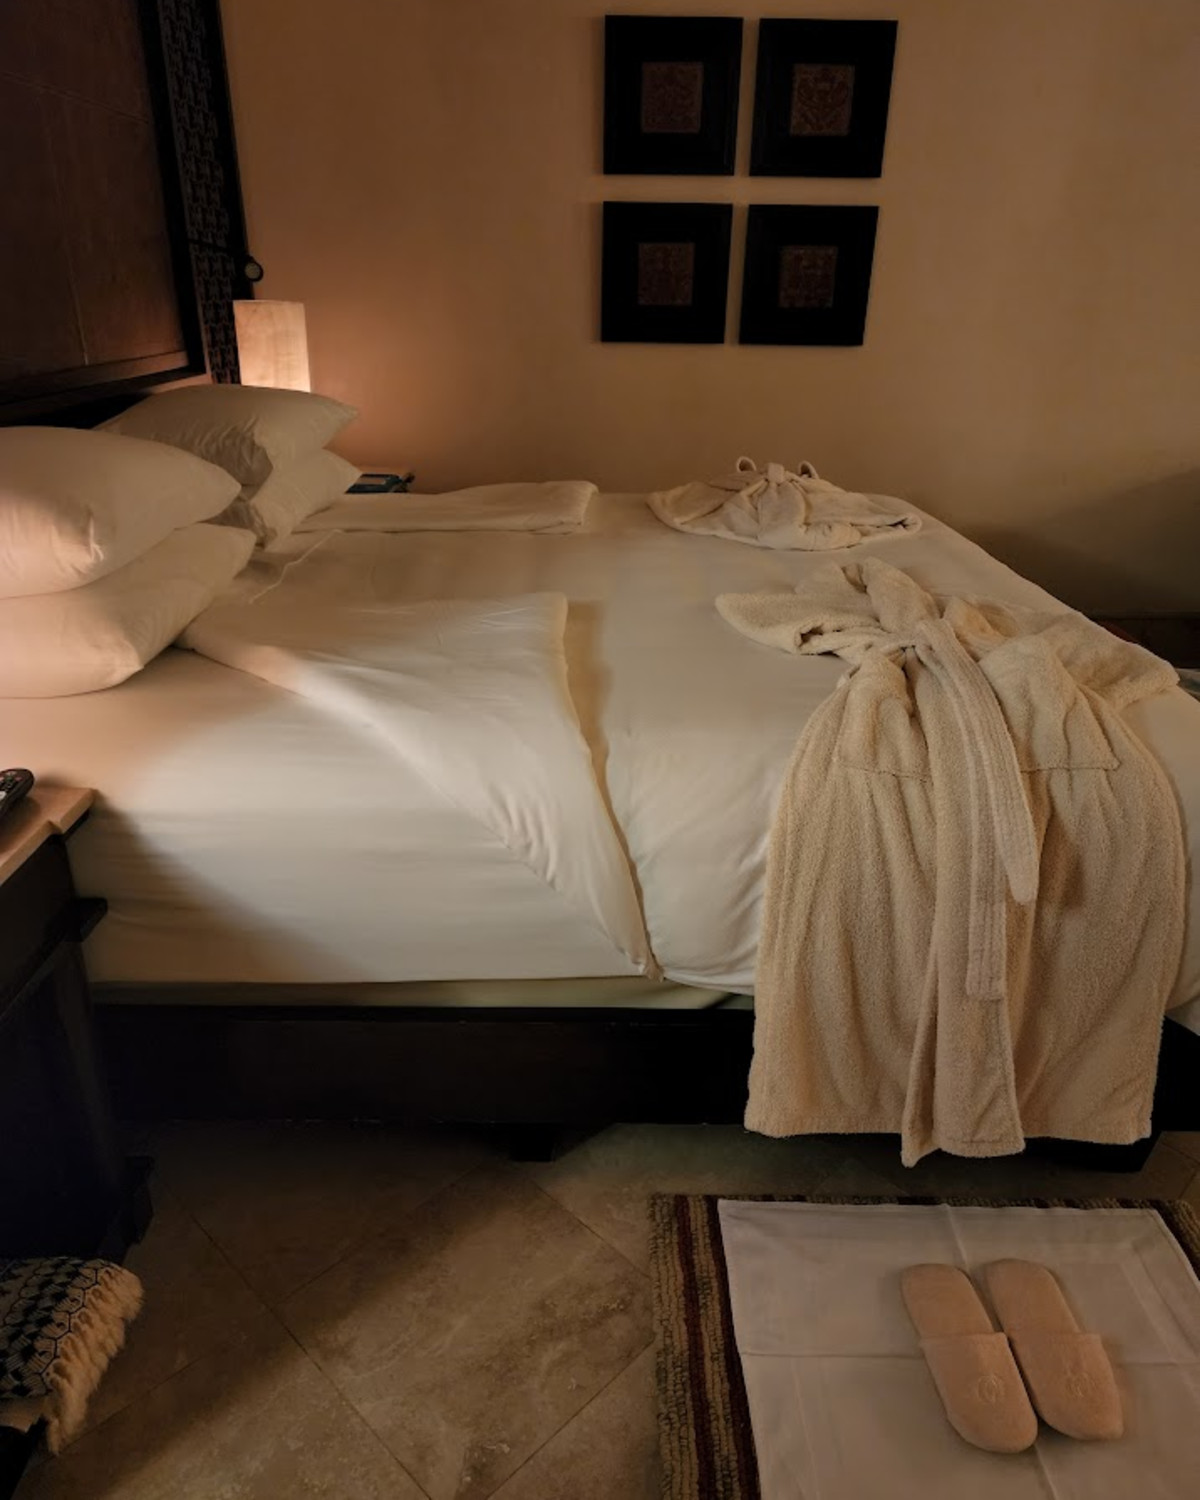 View of hotel bedroom